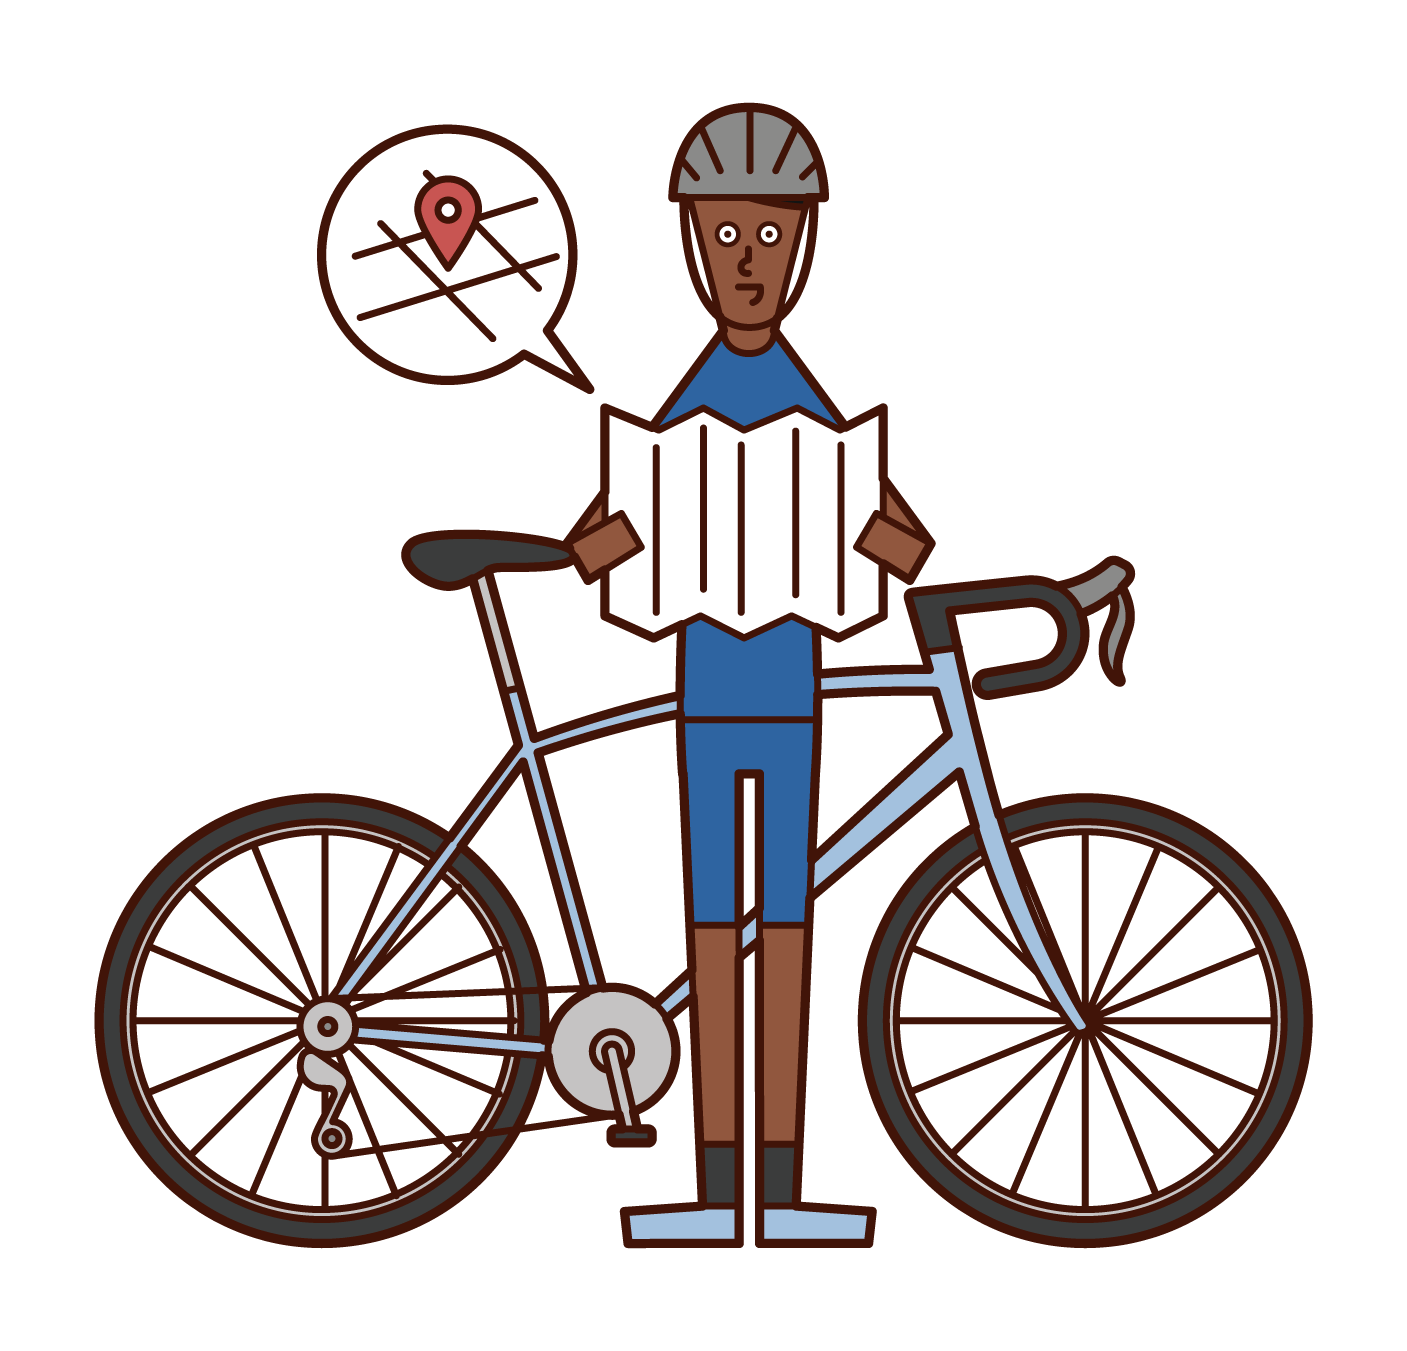 騎自行車的人（男性）的插圖，通過放大地圖看